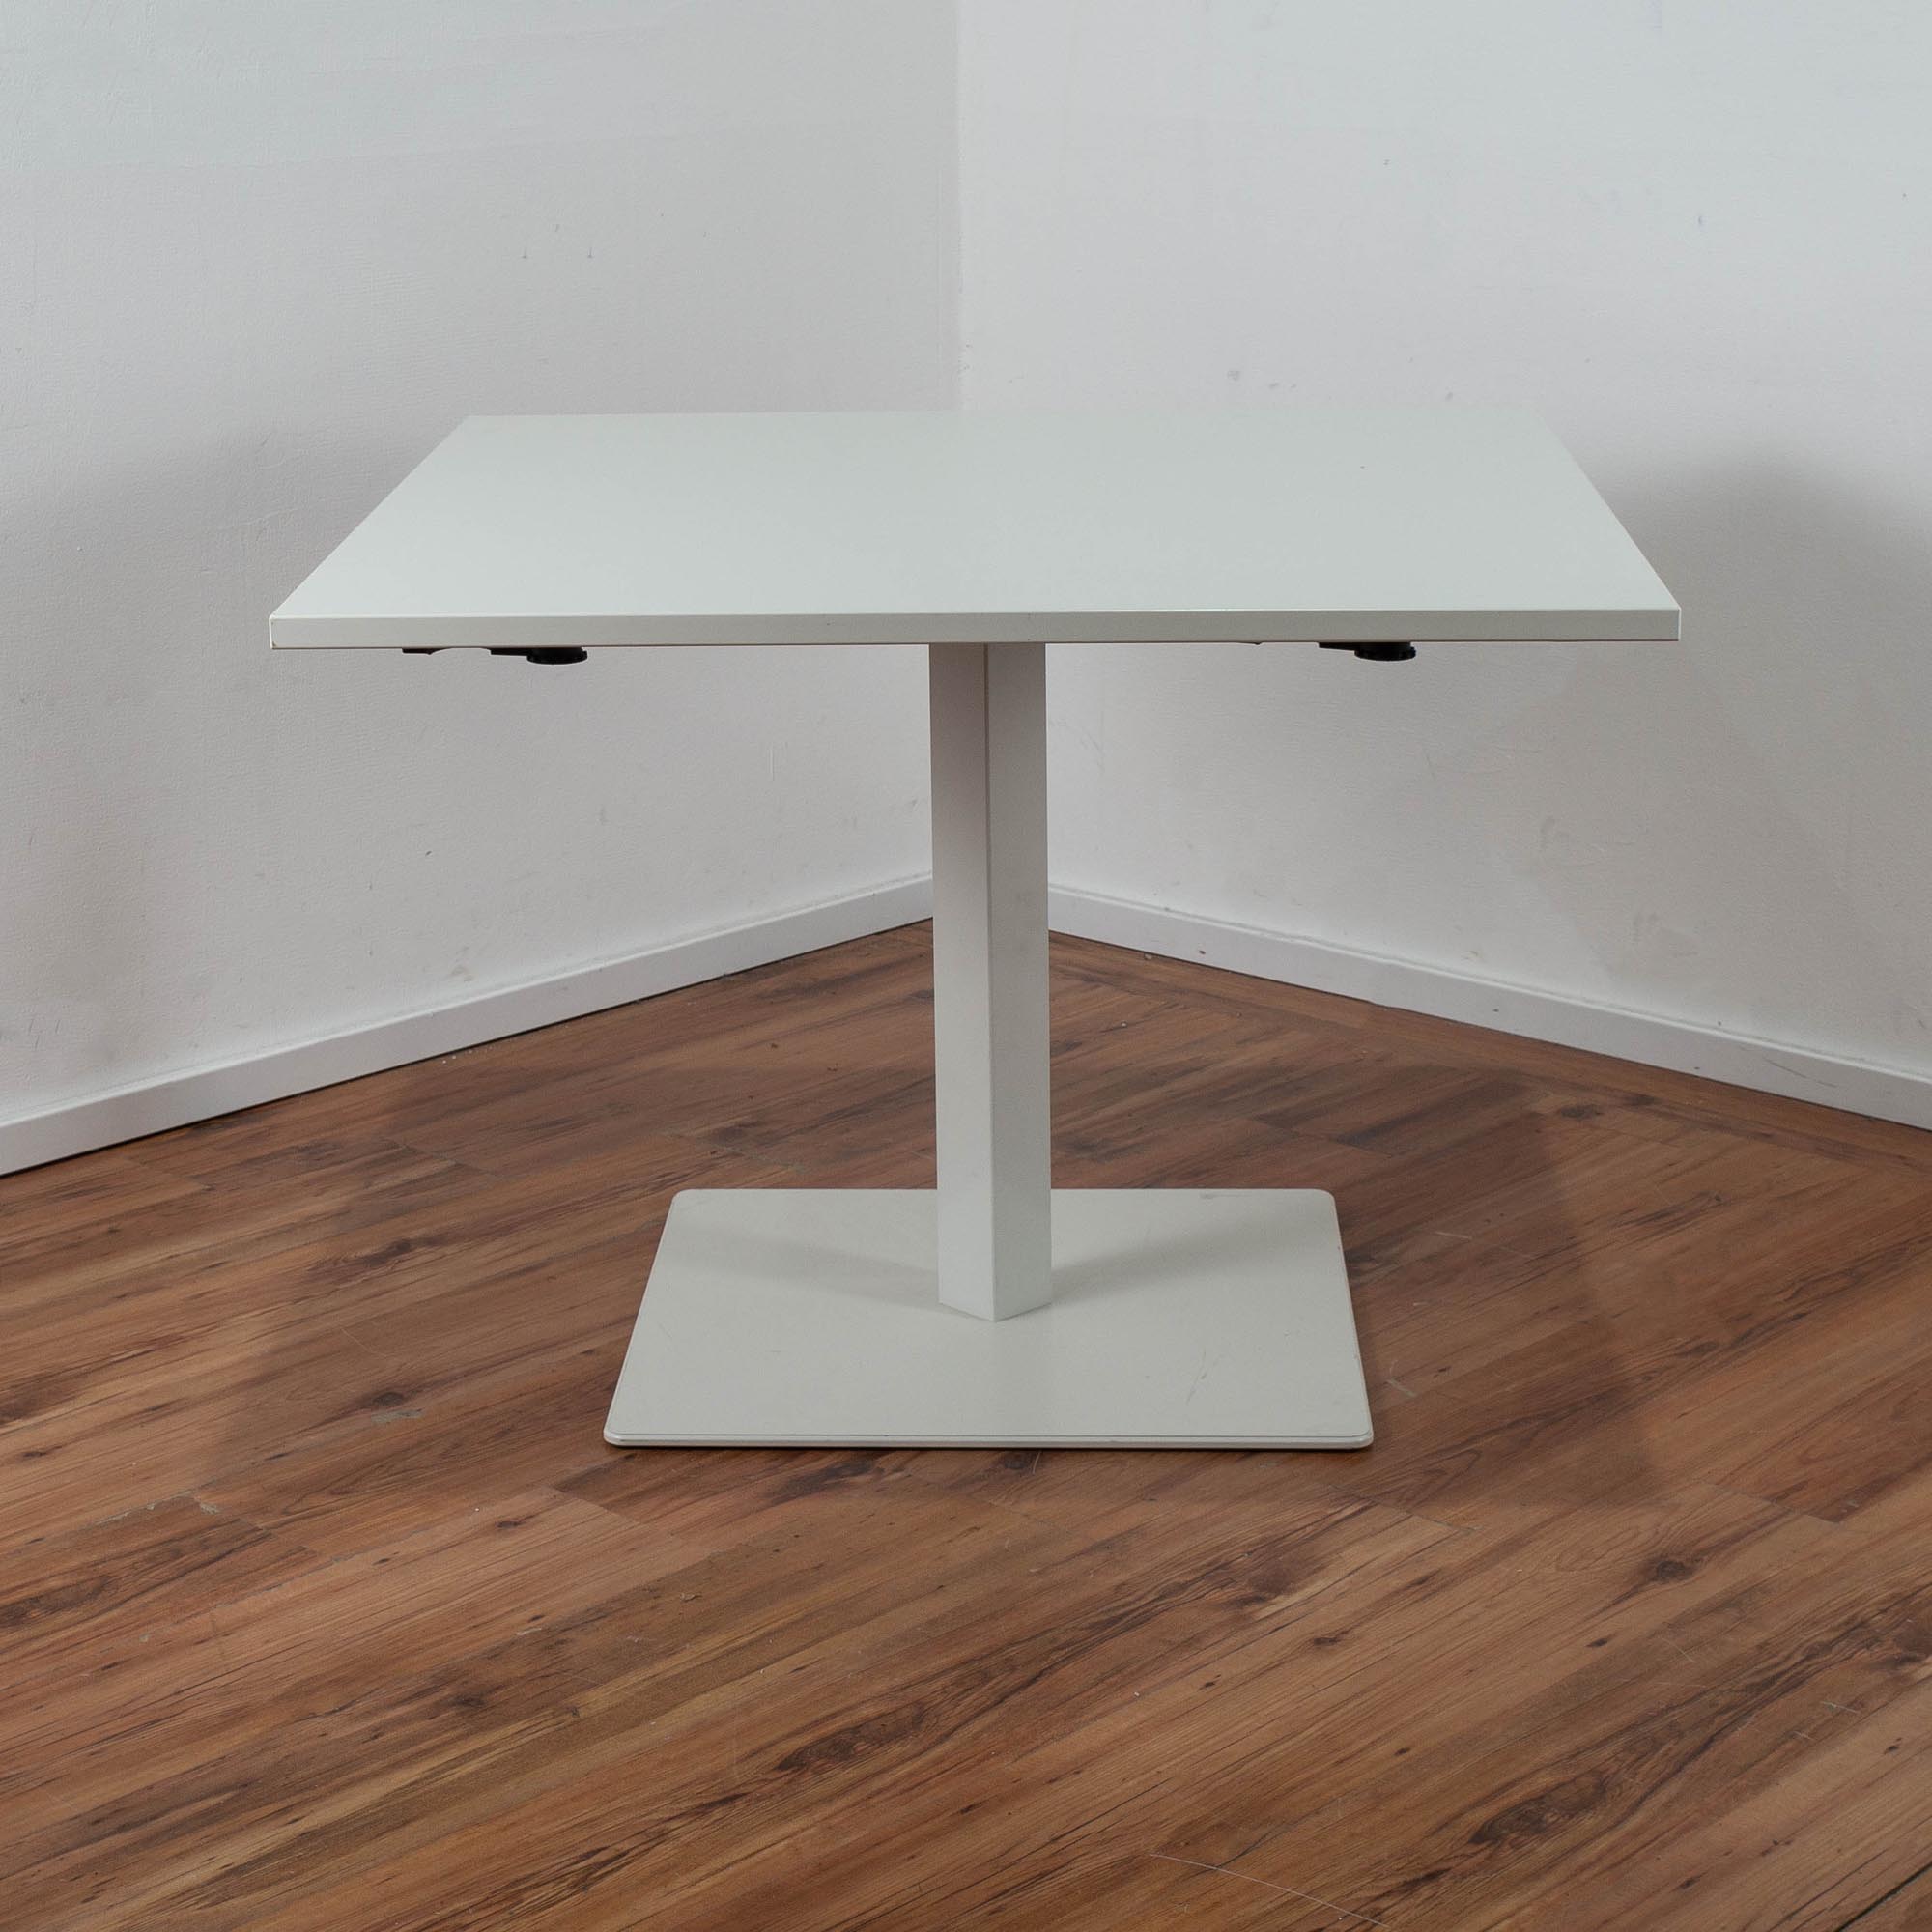 Assmann Besprechungstisch weiß 100 x 100 cm - koppelbar mit weiteren Tischen - Gestell weiß 